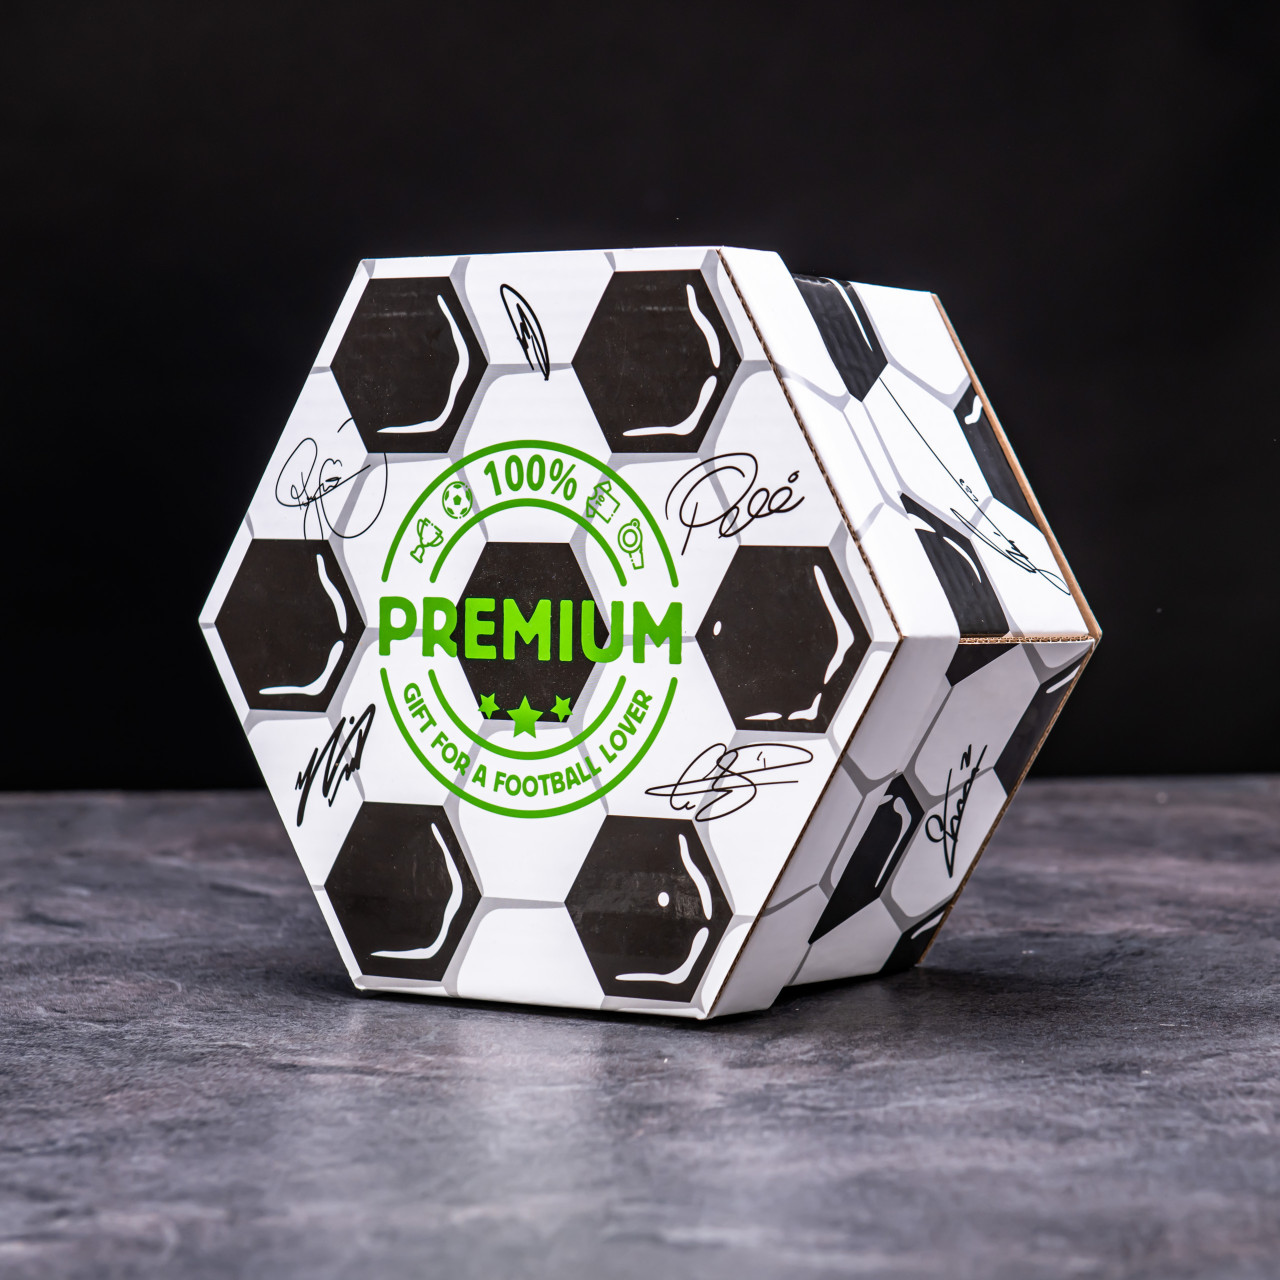 Hexagon plný luxusních holících potřeb - Fotbalový